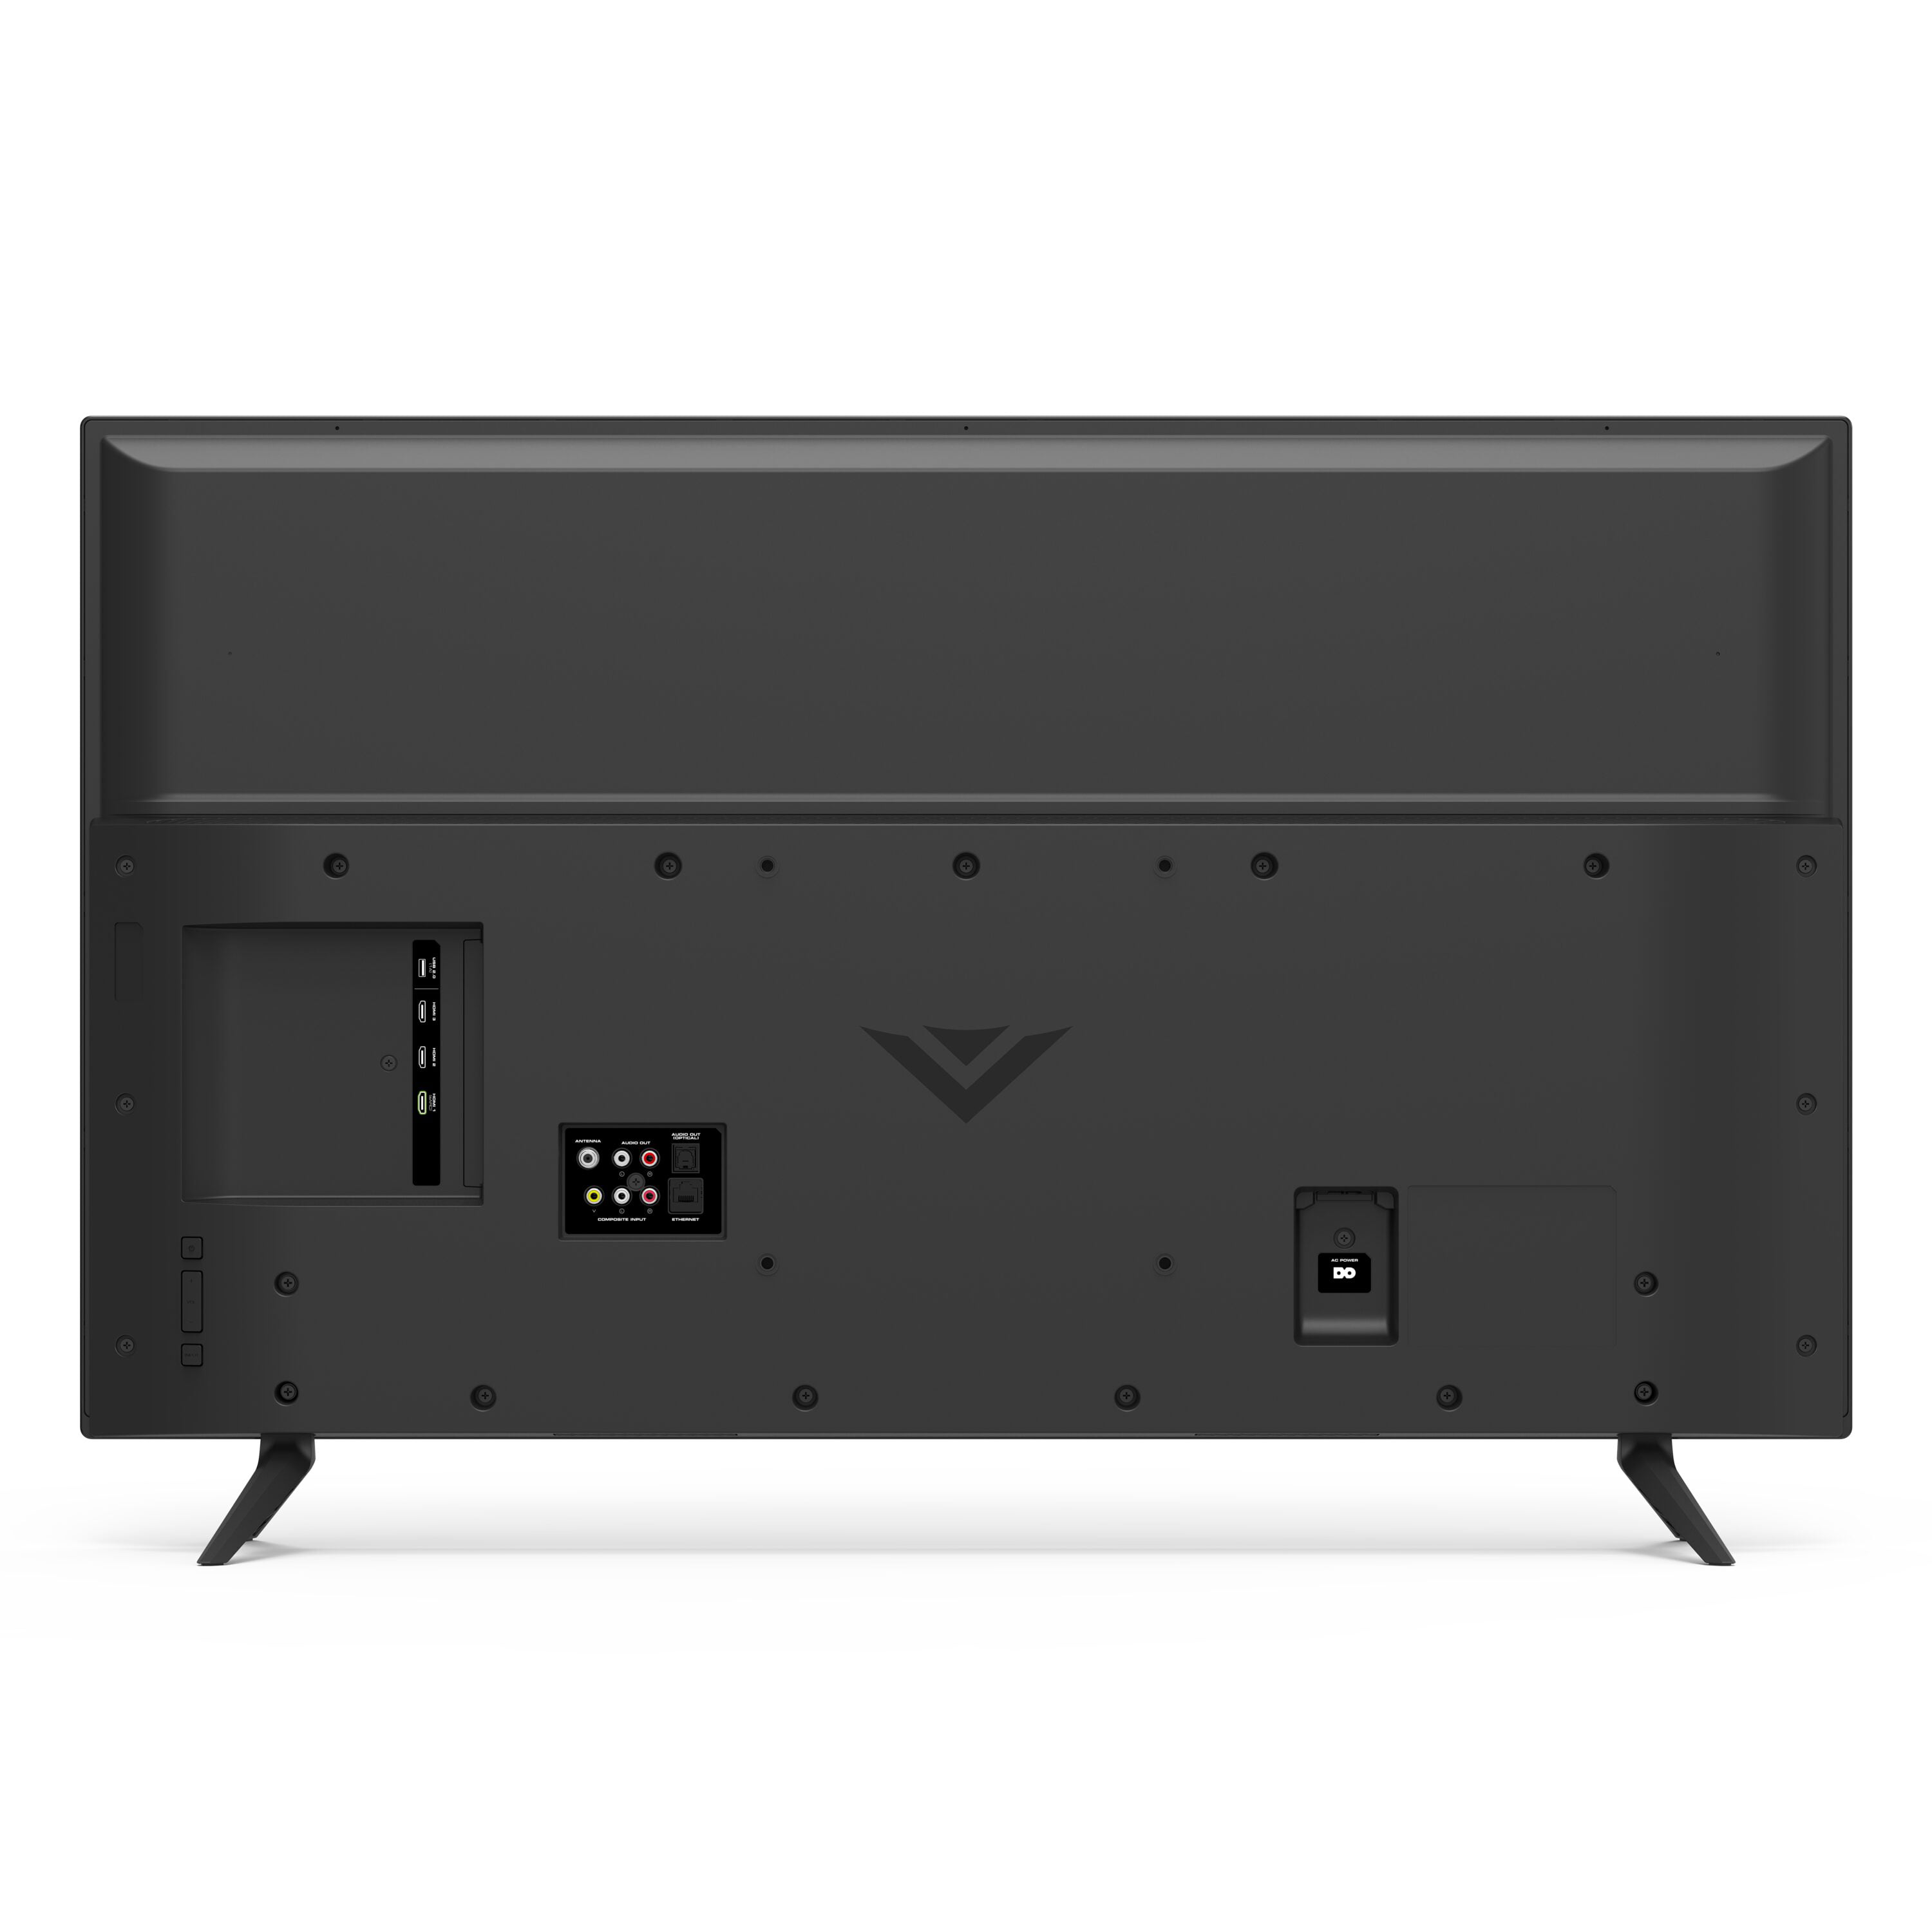 Vizio 50 Class 4k Uhd Led Smartcast Smart Tv V Series V505 G H Walmart Com Walmart Com